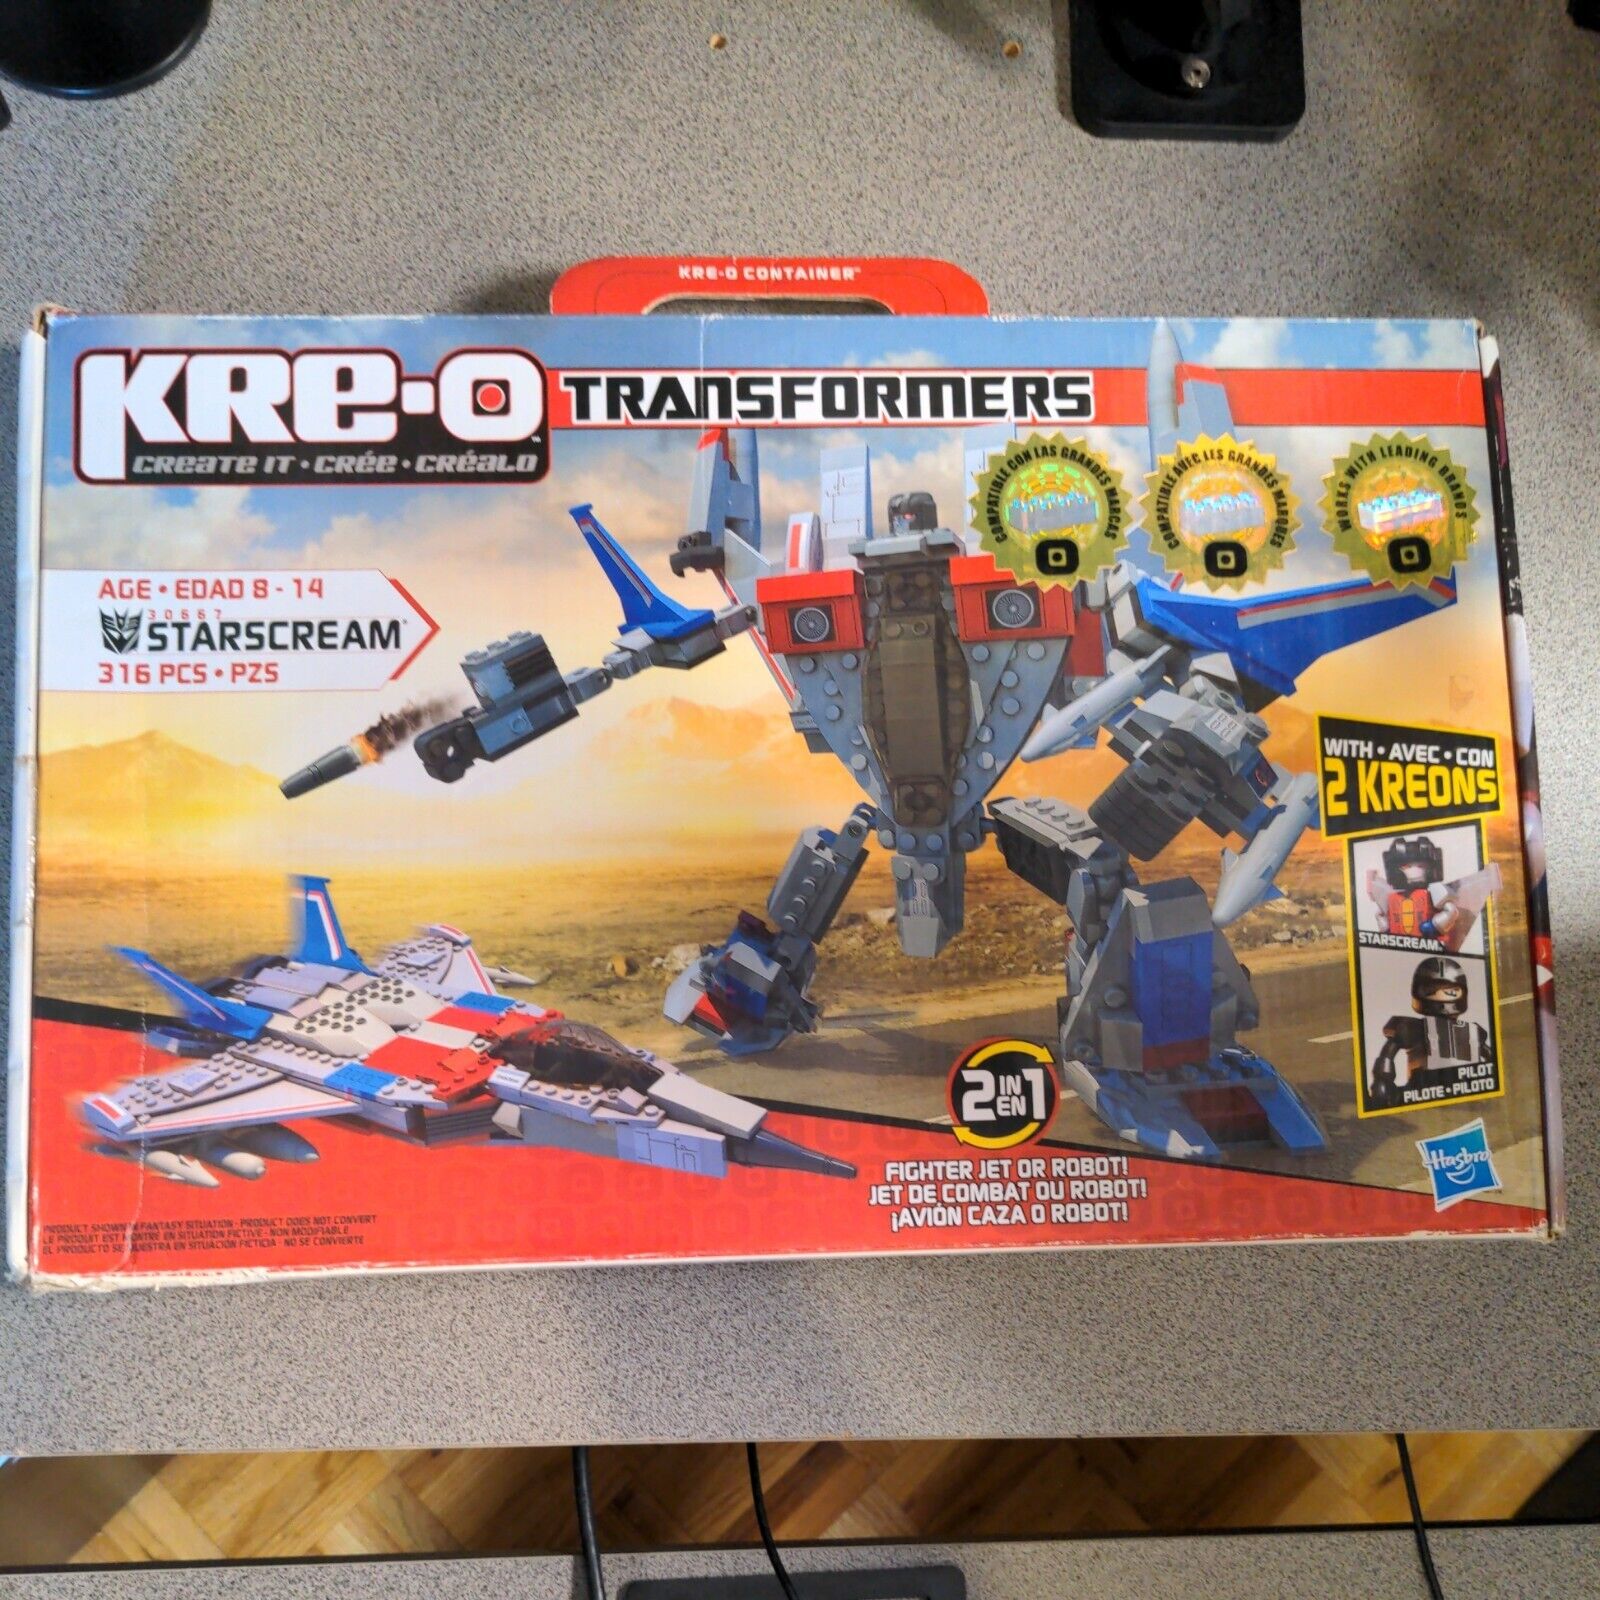 2011 Hasbro G1 Transformers Kre-o StarScream Figure Set Boxed 316 Pcs